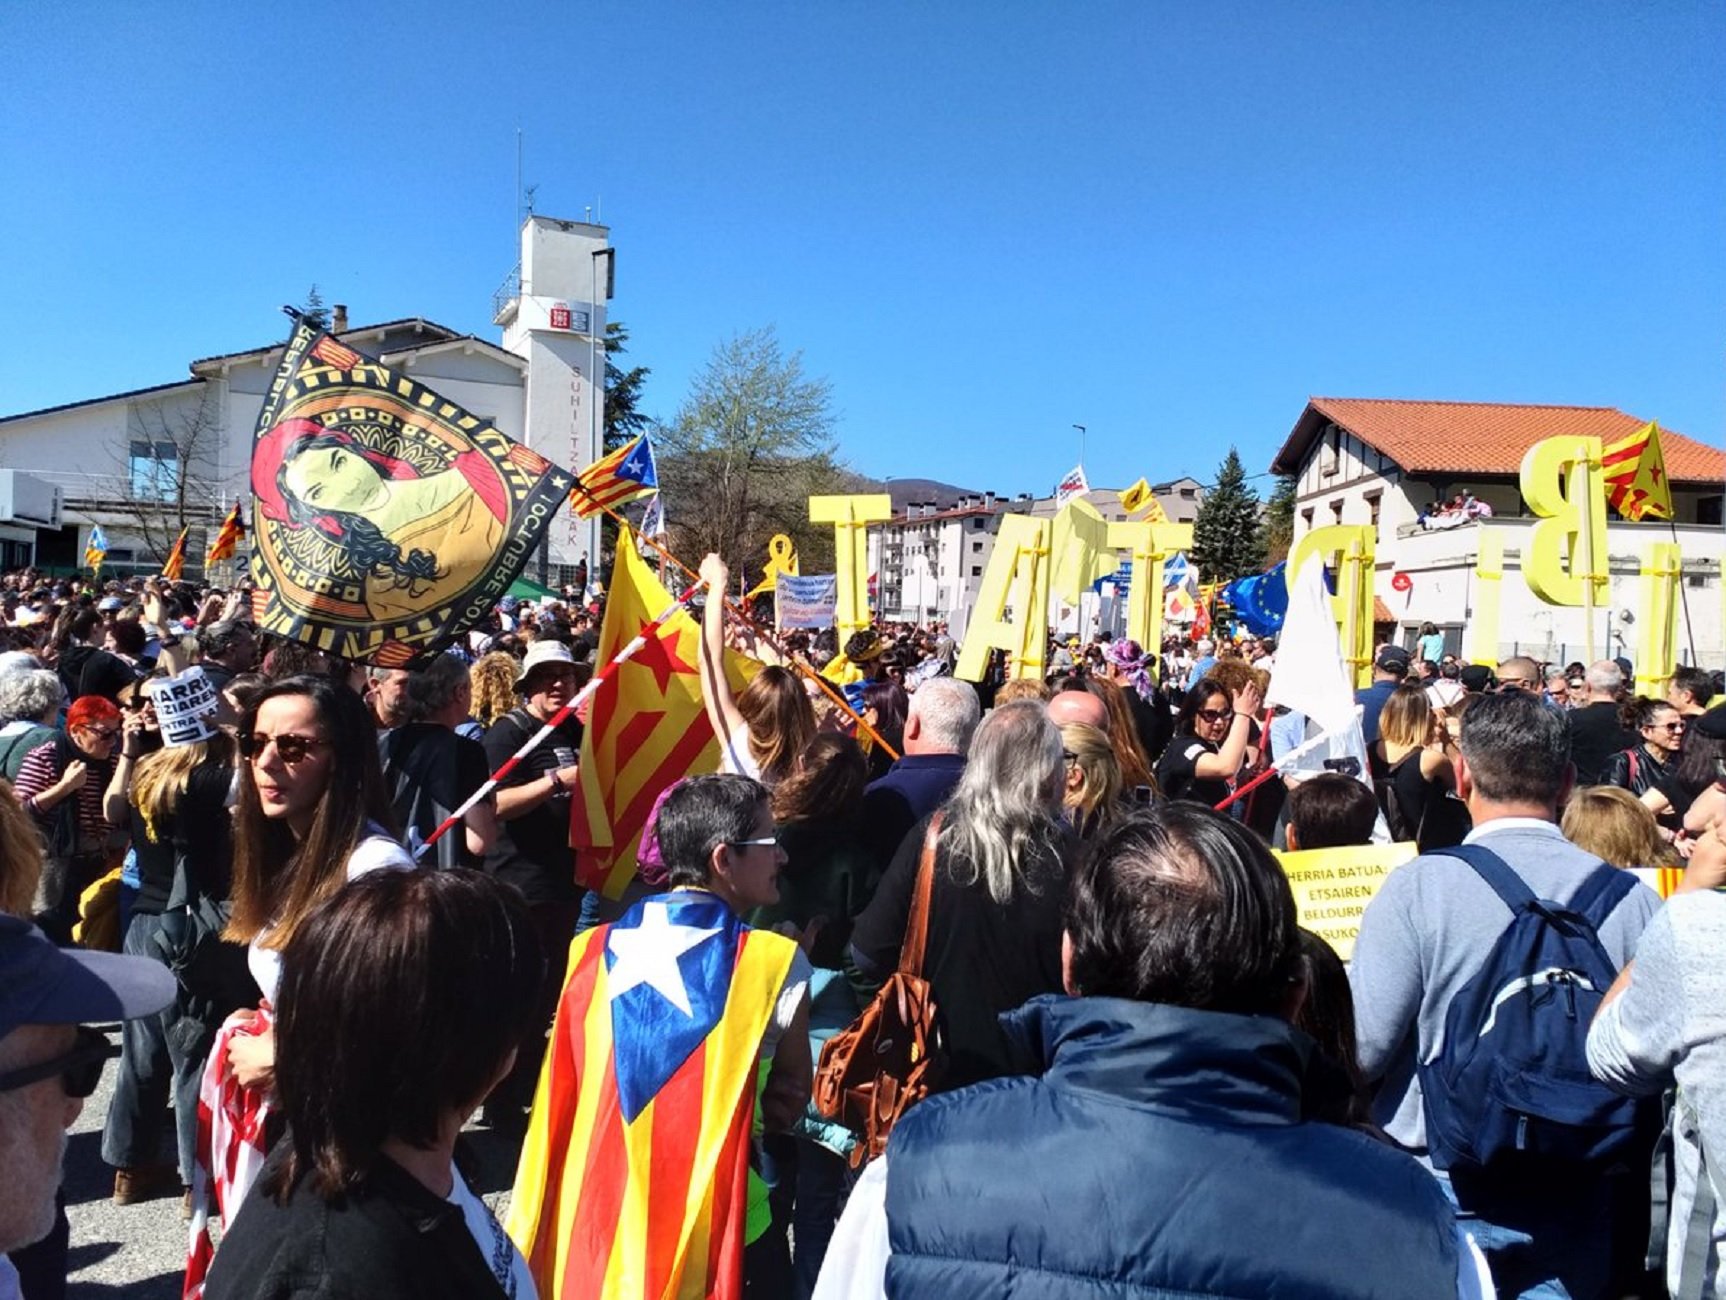 Allau de catalans a Altsasu per demanar la llibertat dels joves a la presó